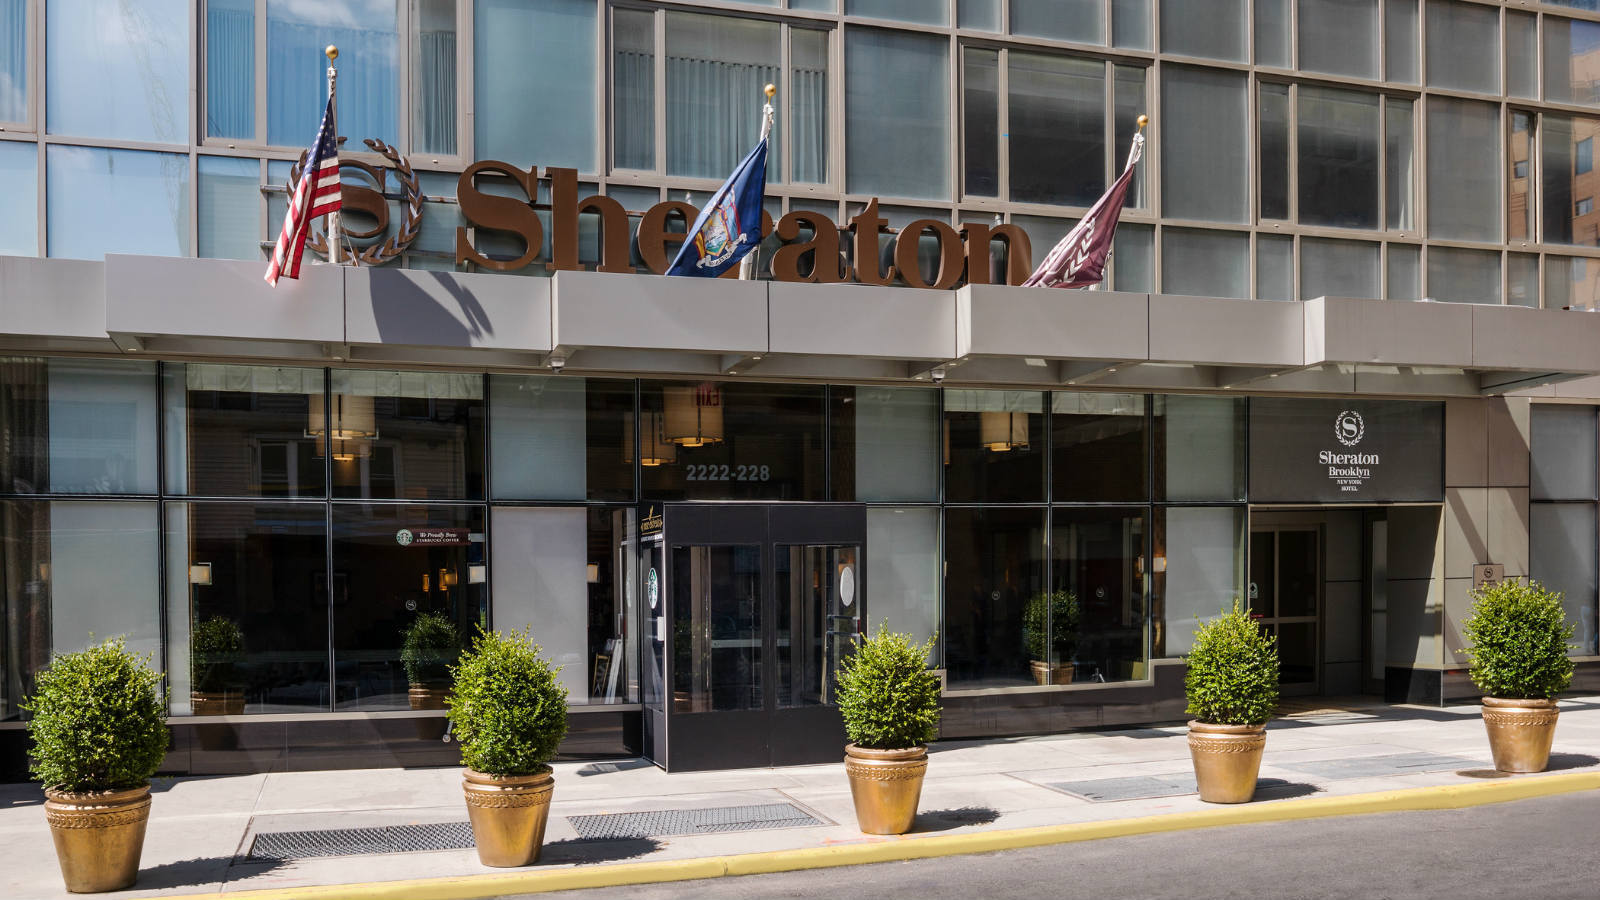 Photo of Sheraton Brooklyn New York Hotel, Brooklyn, NY